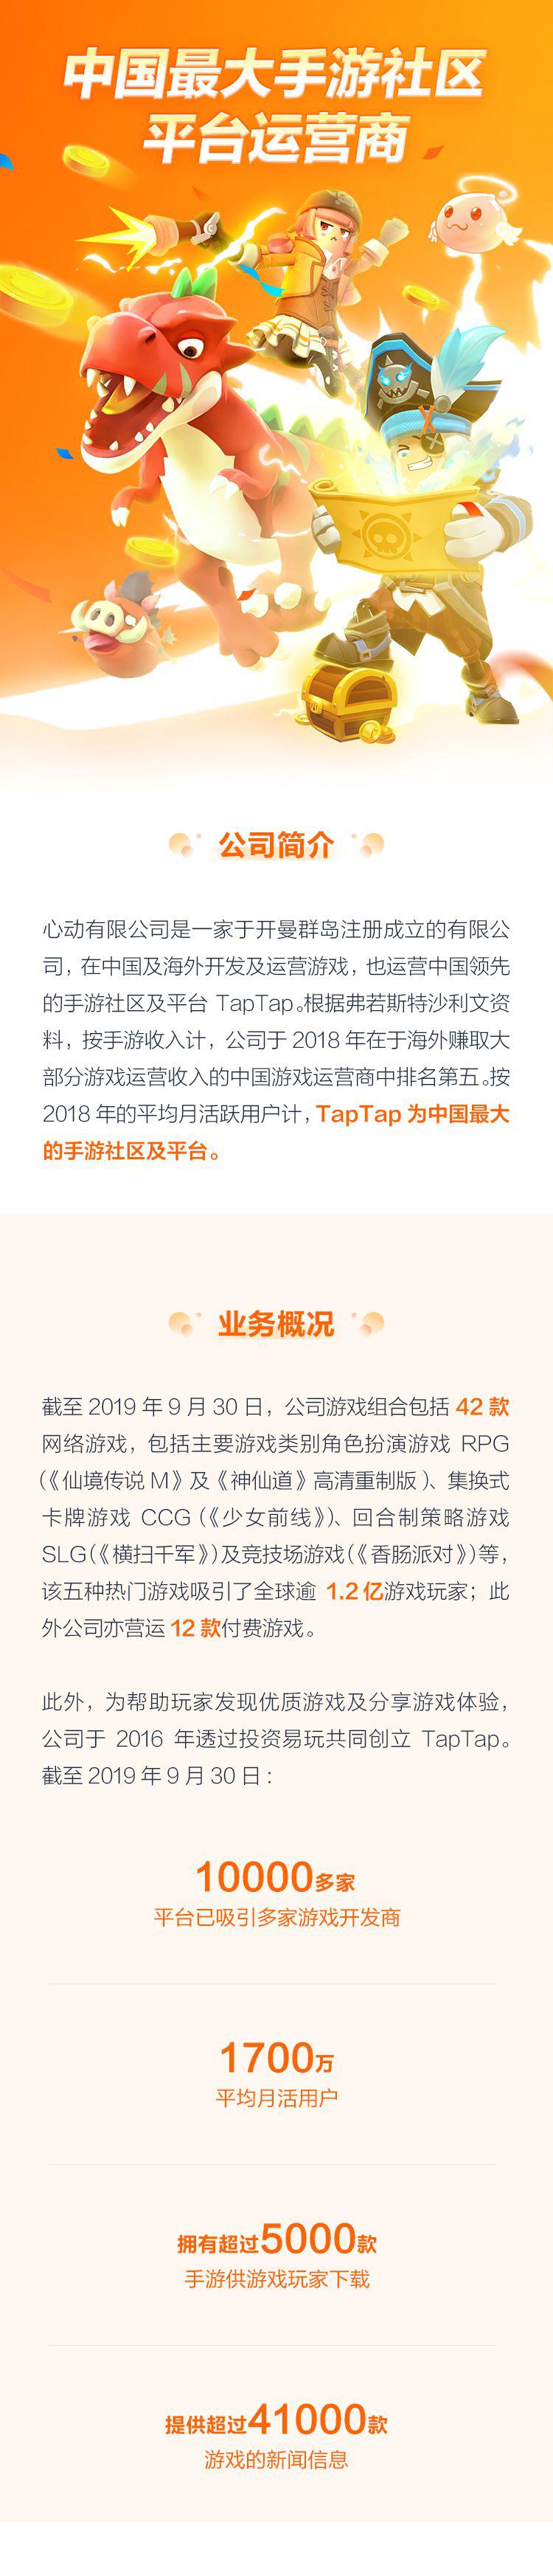 游戏 运营 心动 公司 社区 中国